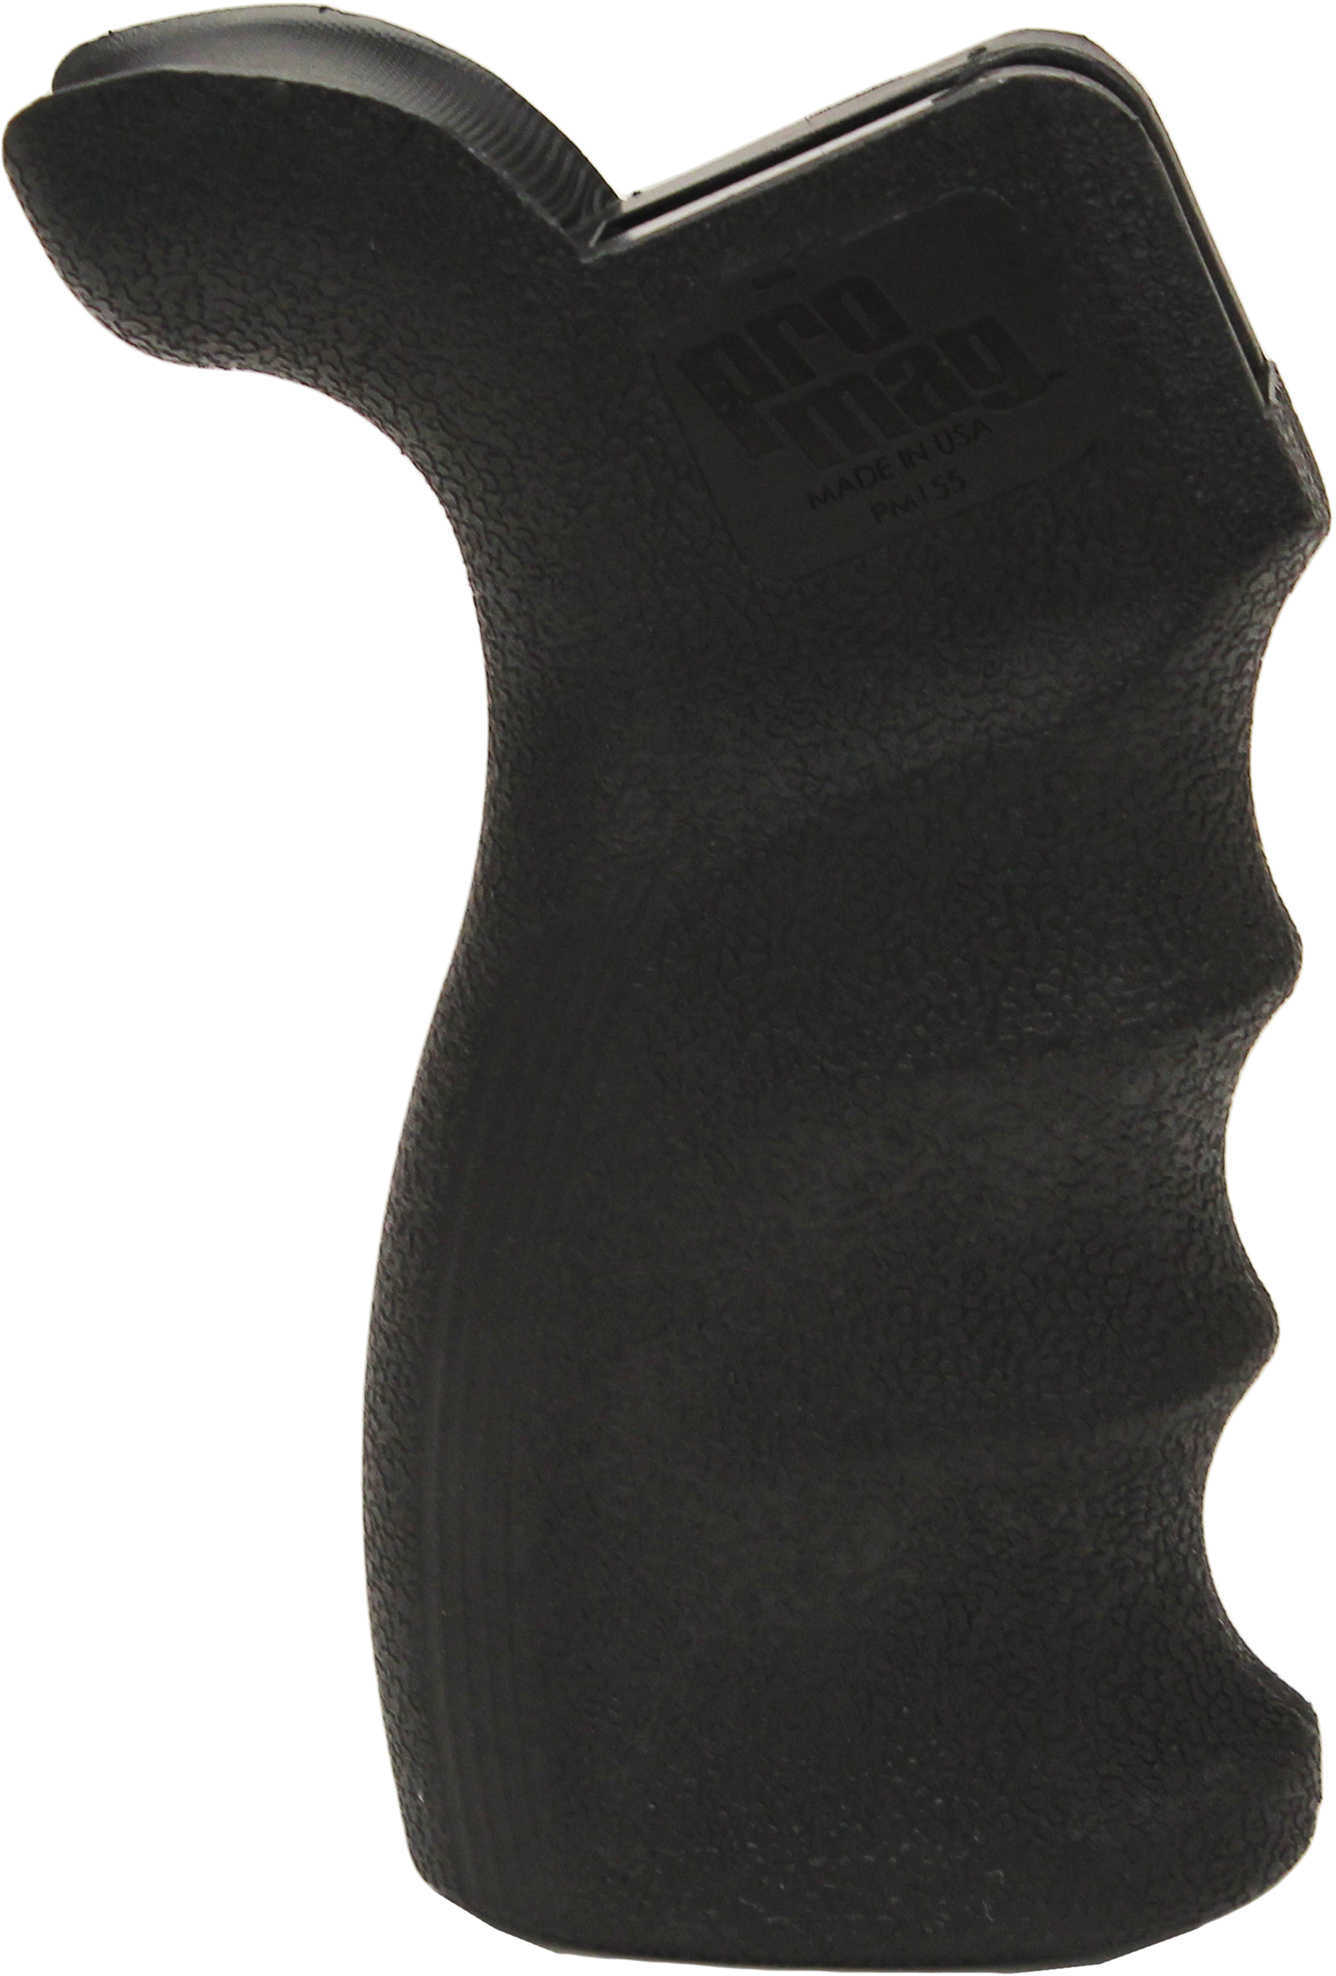 ProMag AR-15 / M16 Tactical Pistol Grip PM155